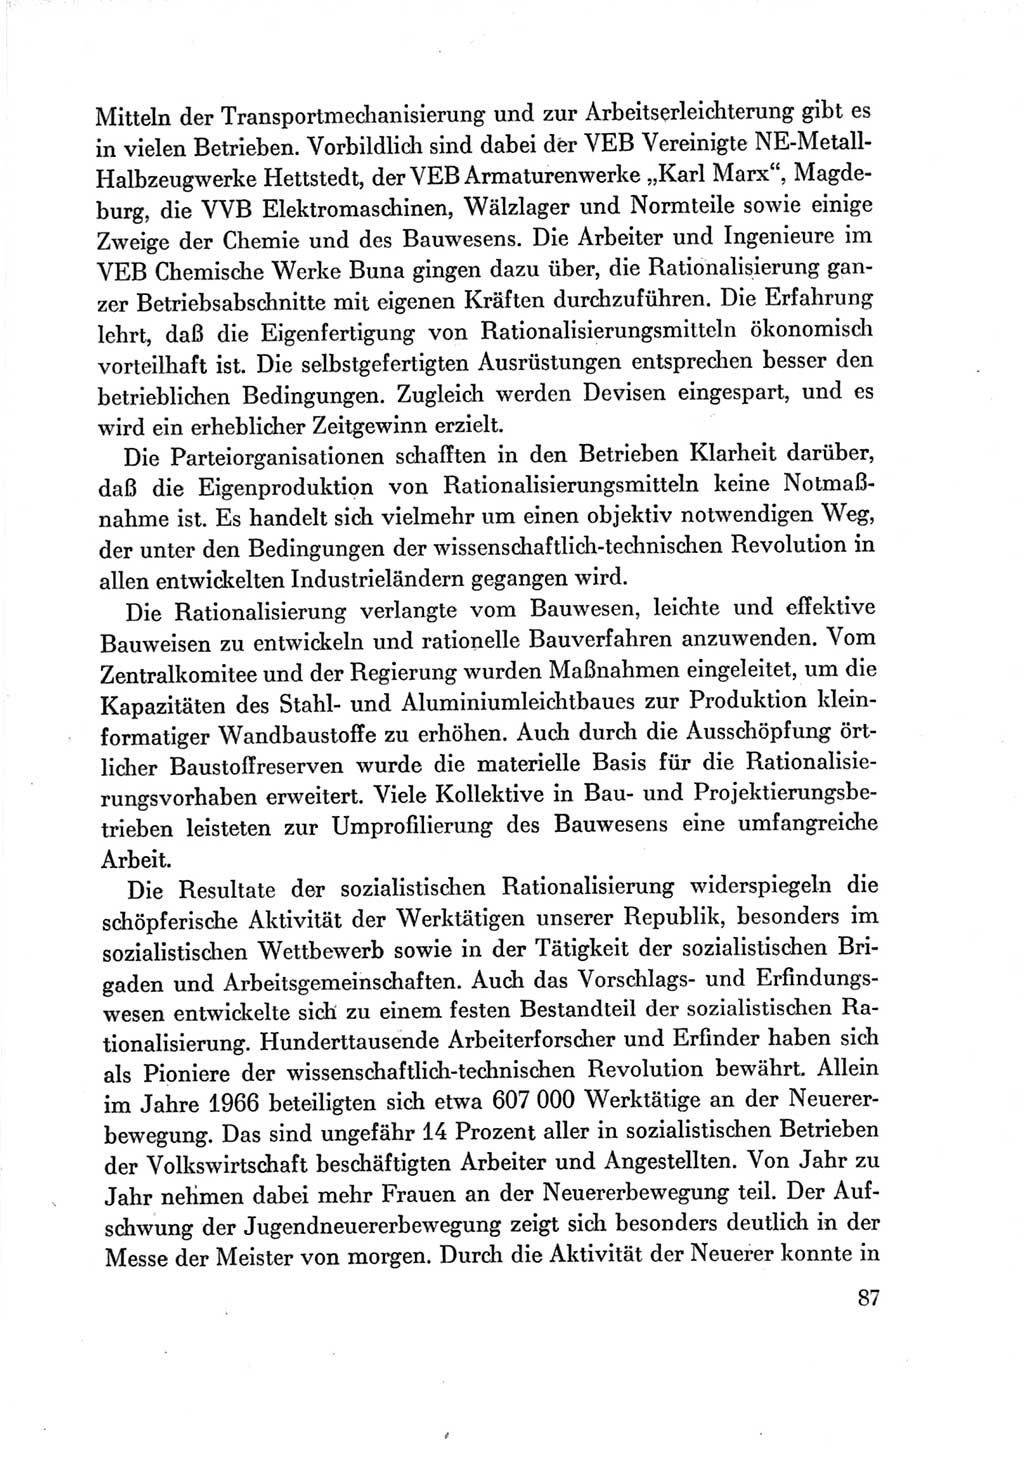 Protokoll der Verhandlungen des Ⅶ. Parteitages der Sozialistischen Einheitspartei Deutschlands (SED) [Deutsche Demokratische Republik (DDR)] 1967, Band Ⅳ, Seite 87 (Prot. Verh. Ⅶ. PT SED DDR 1967, Bd. Ⅳ, S. 87)